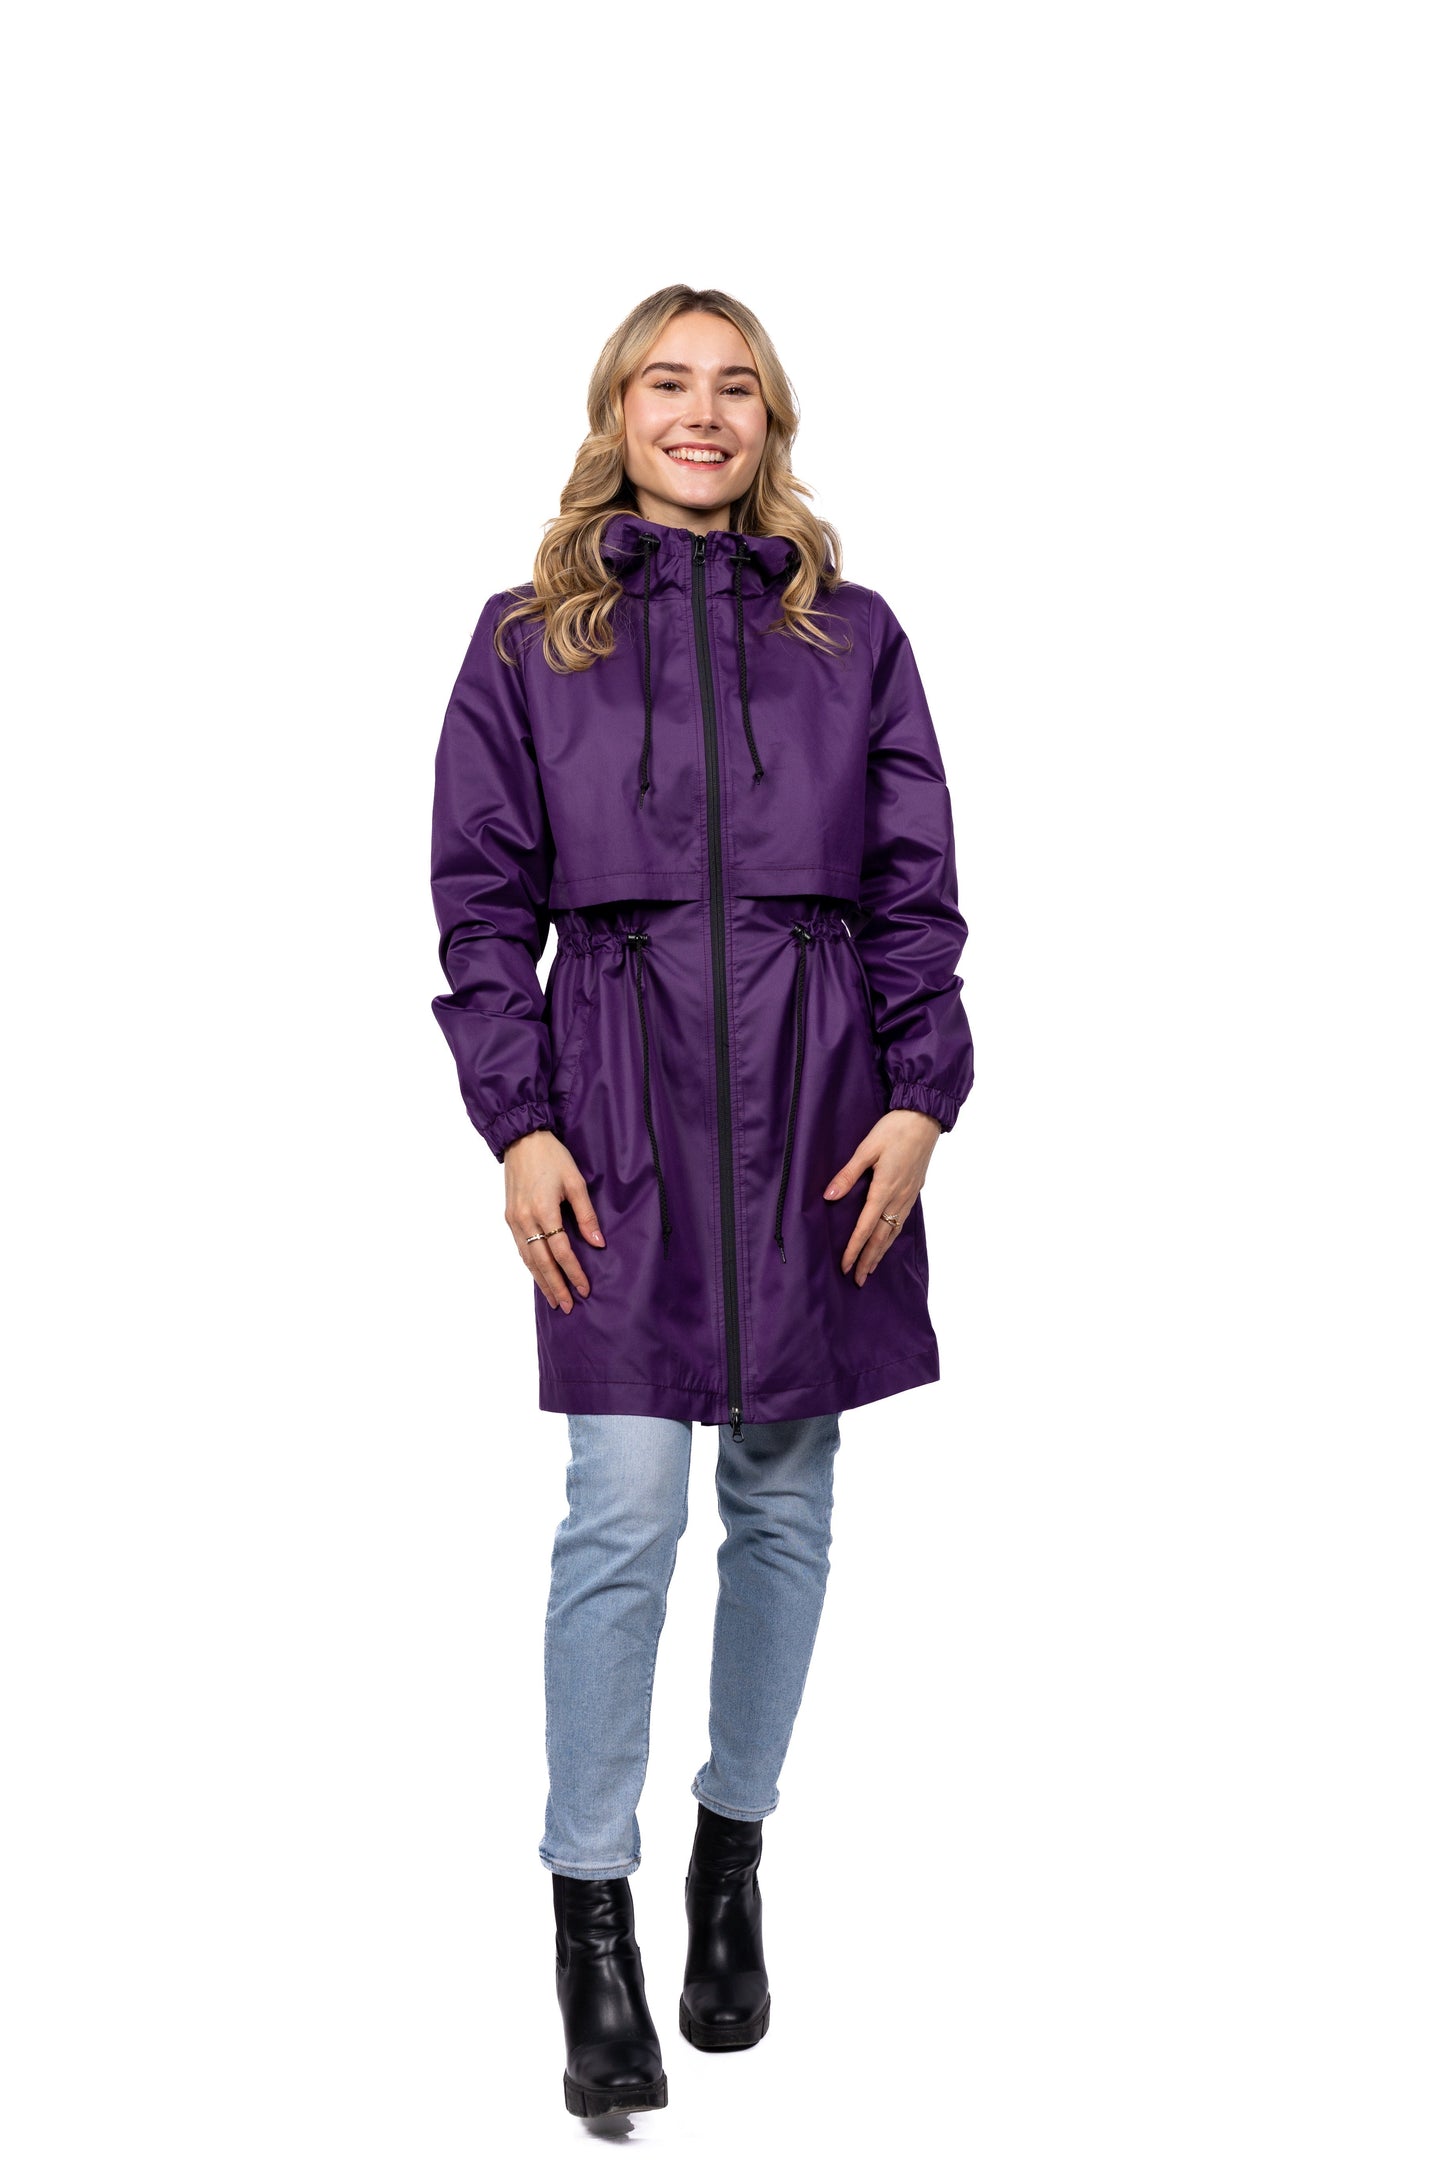 Desloups manteau mi-saison imperméable urbain avec capuchon, ajusté pour femme - Violet